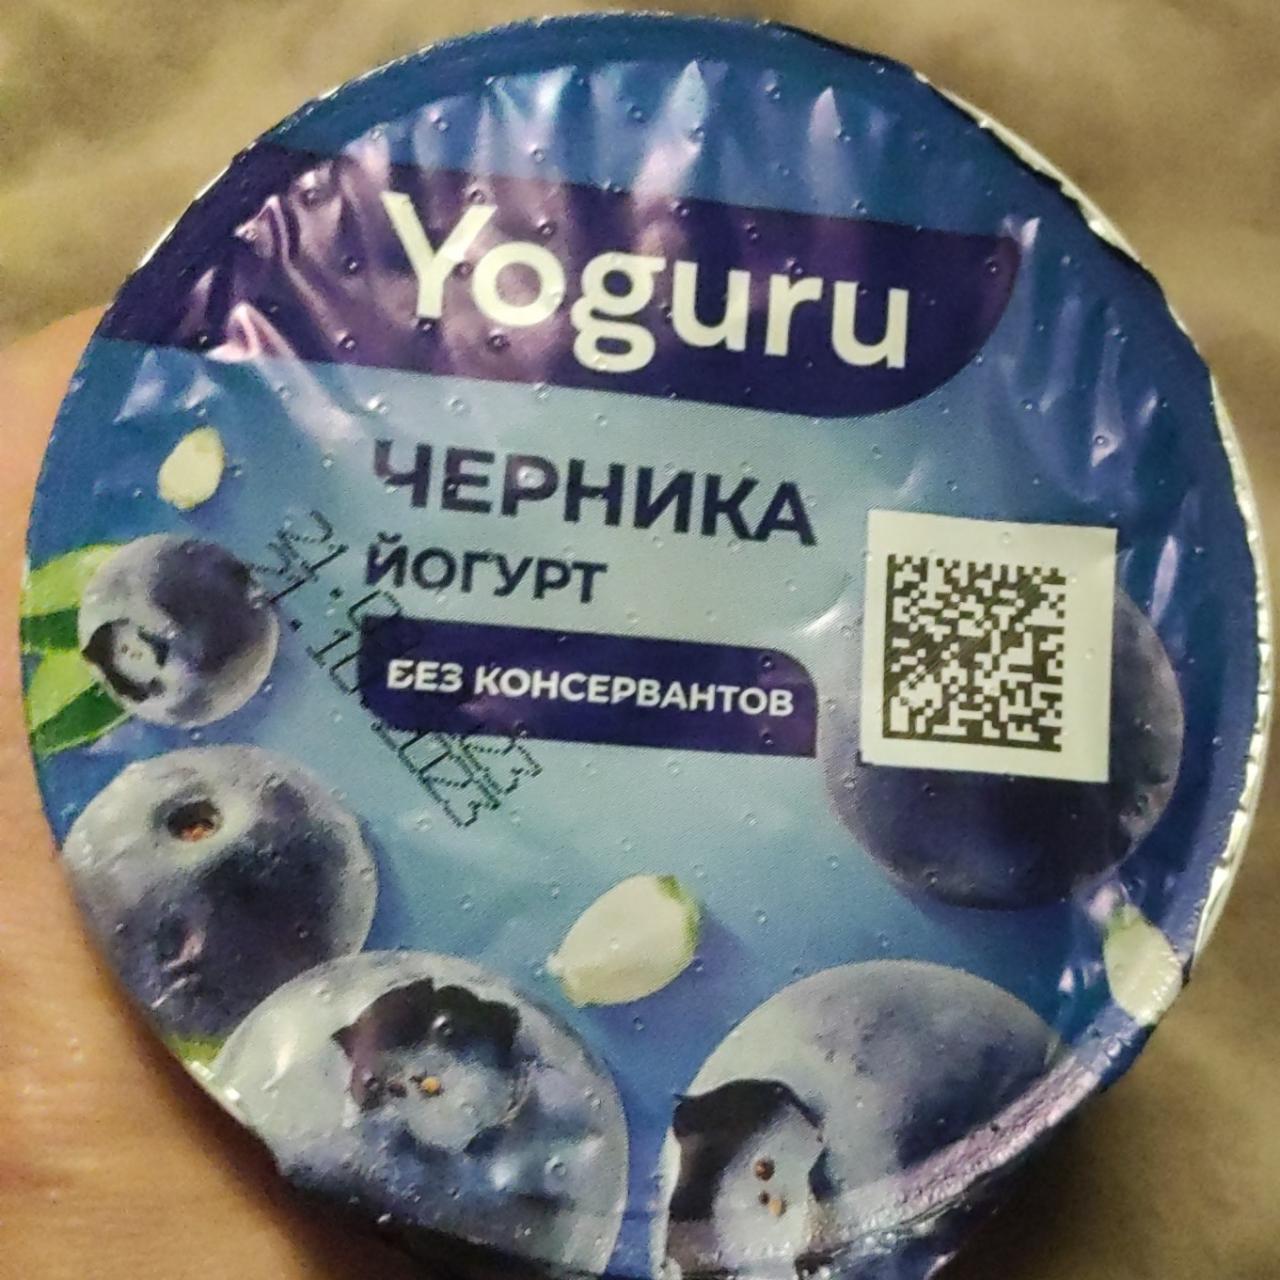 Фото - йогурт густой черника 1.5% Yoguru Минский молочный завод